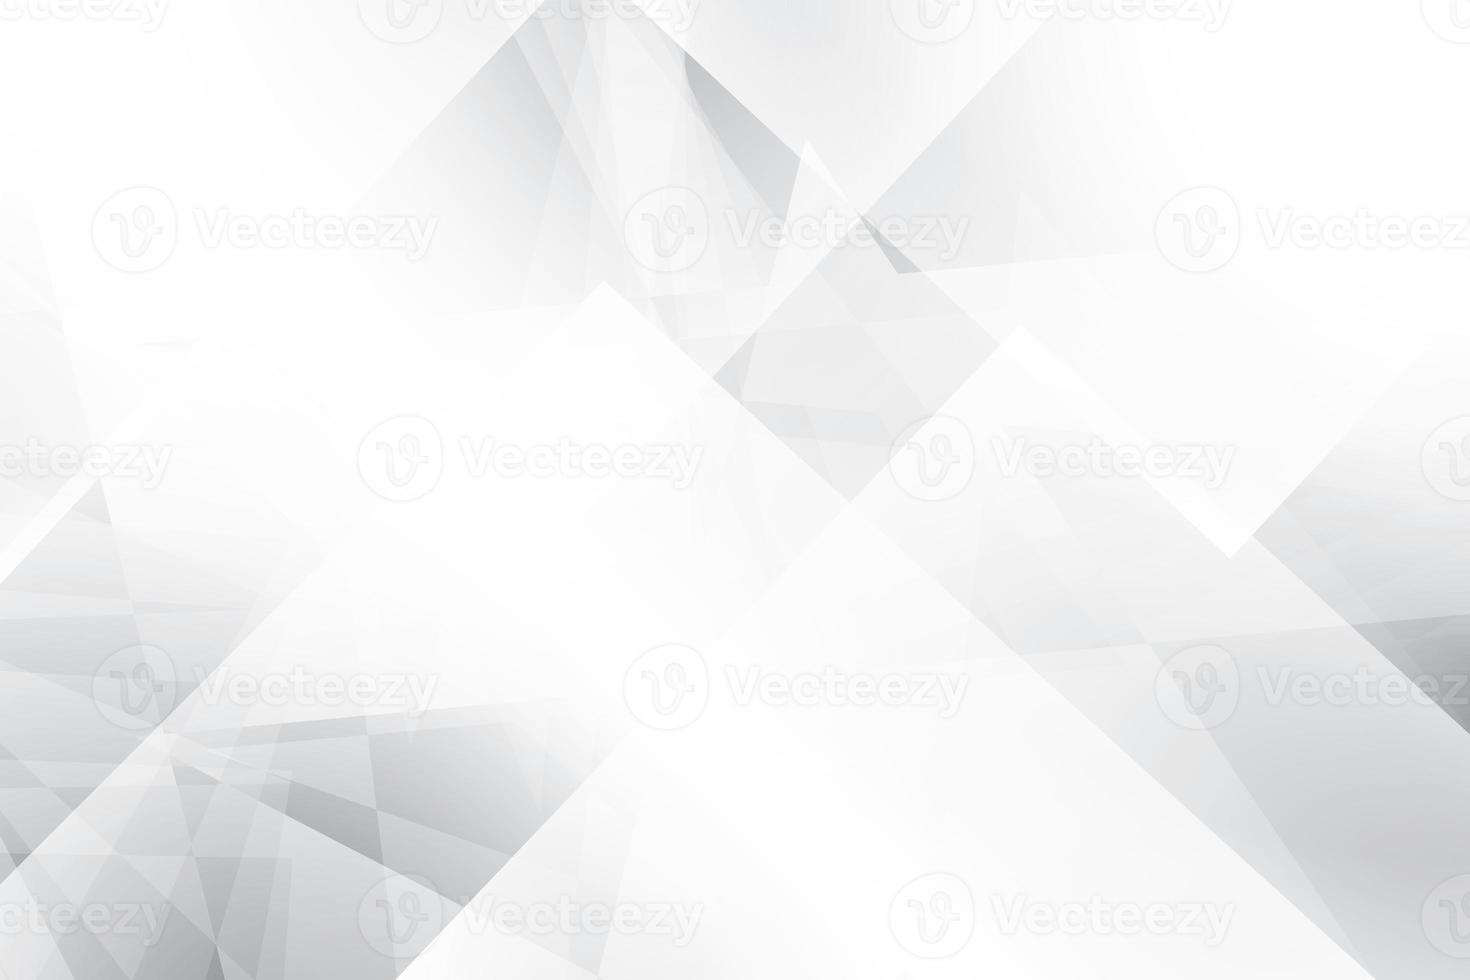 abstrakt vit och grå färg, modern designbakgrund med geometrisk form. vektor illustration. foto